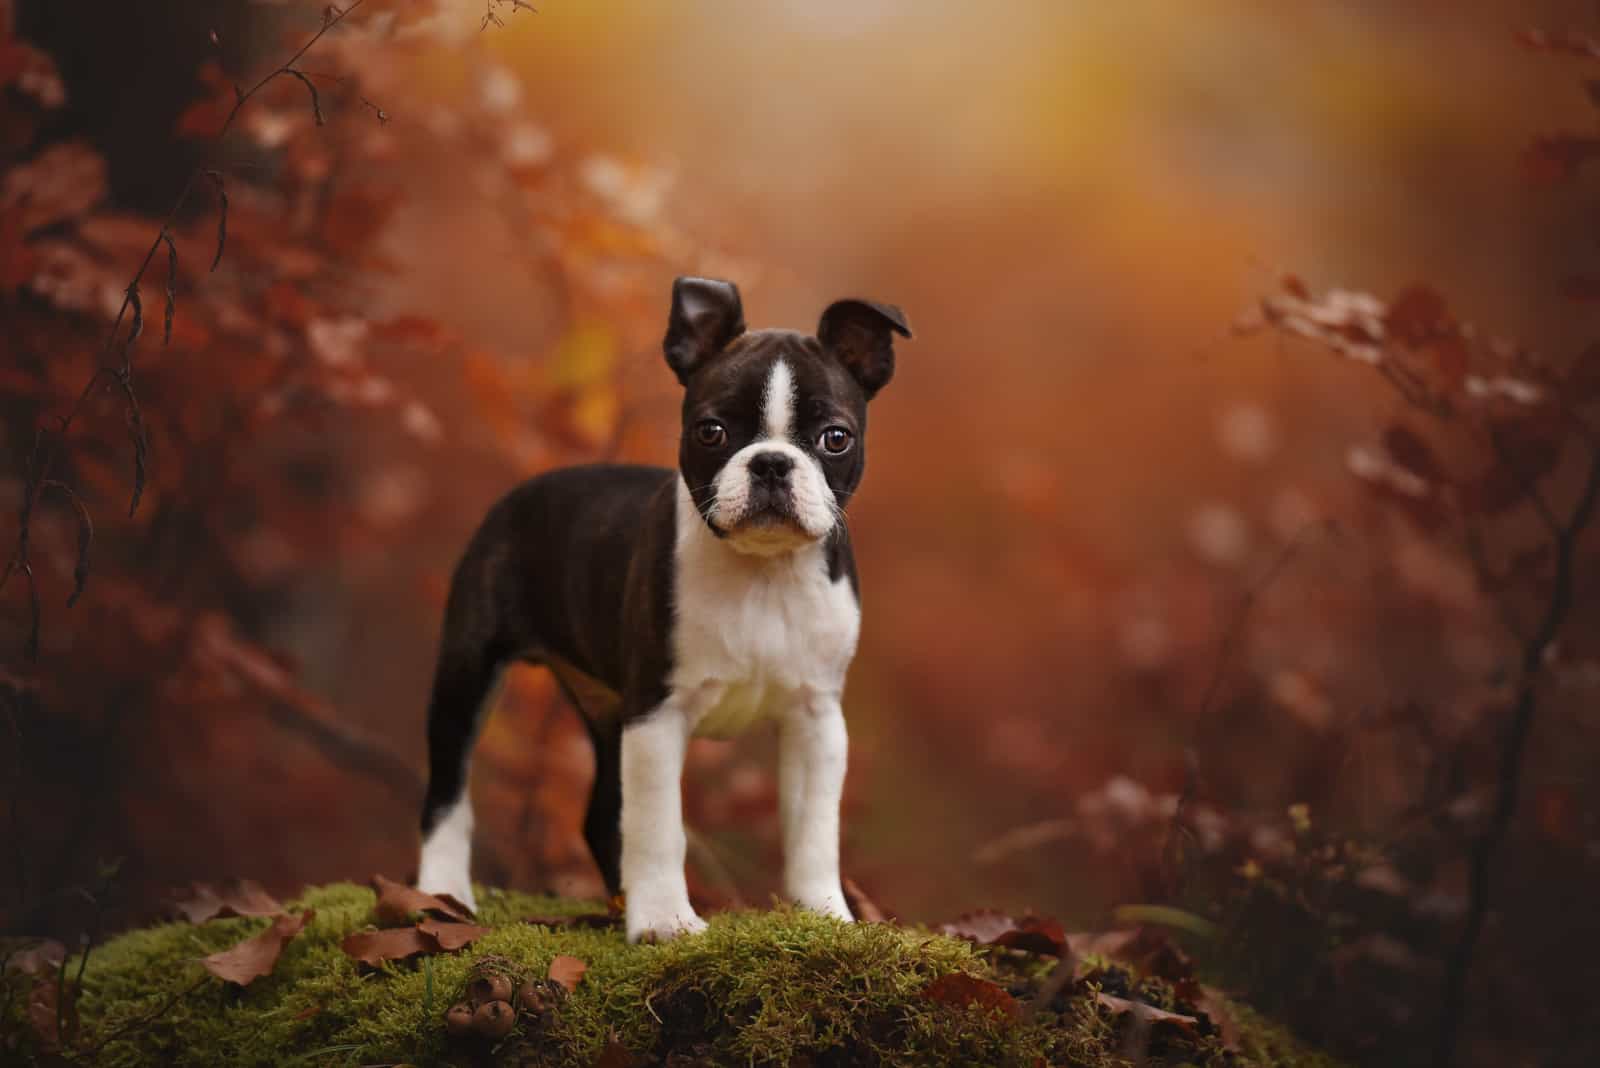 Boston terrier puppy in autumn